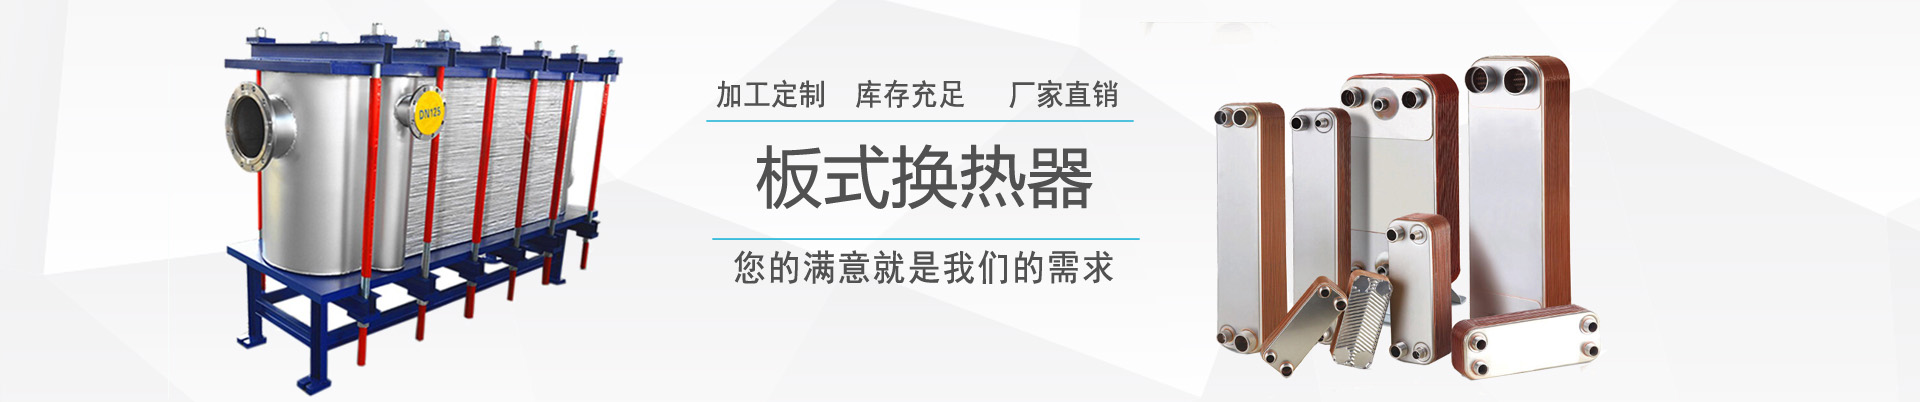 可拆式板式換熱器 - 產品中心 - ,換熱器,板式換熱器,換熱器機組,上海將星化工設備有限公司